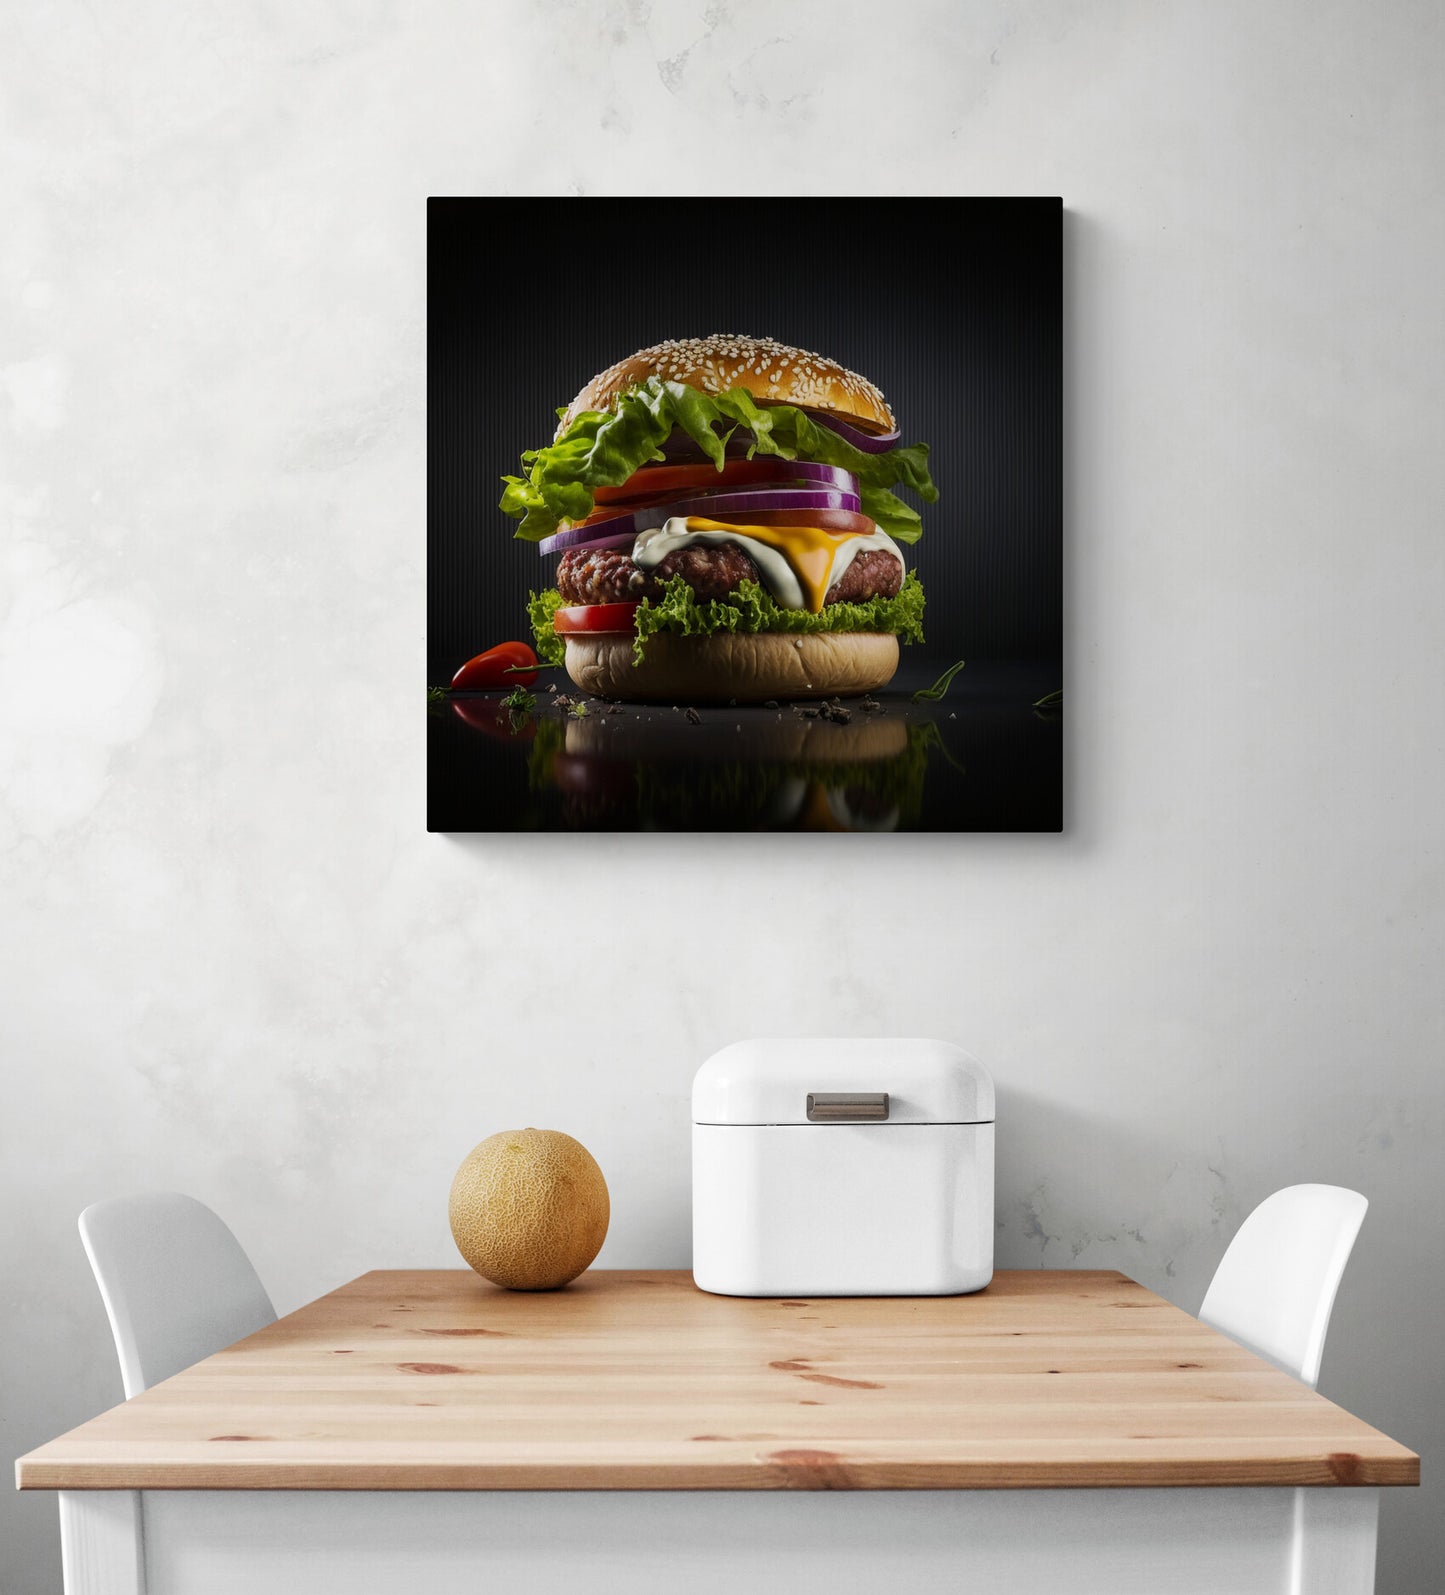 Tableau cuisine, tableau hamburger, tableau de decoration de taille moyenne d'une photo representant un hamburger en gros plan, à l'allure très apétissante avec steak, fromage, oignon, salade, tomate. Accrocher au mur d'une cuisne